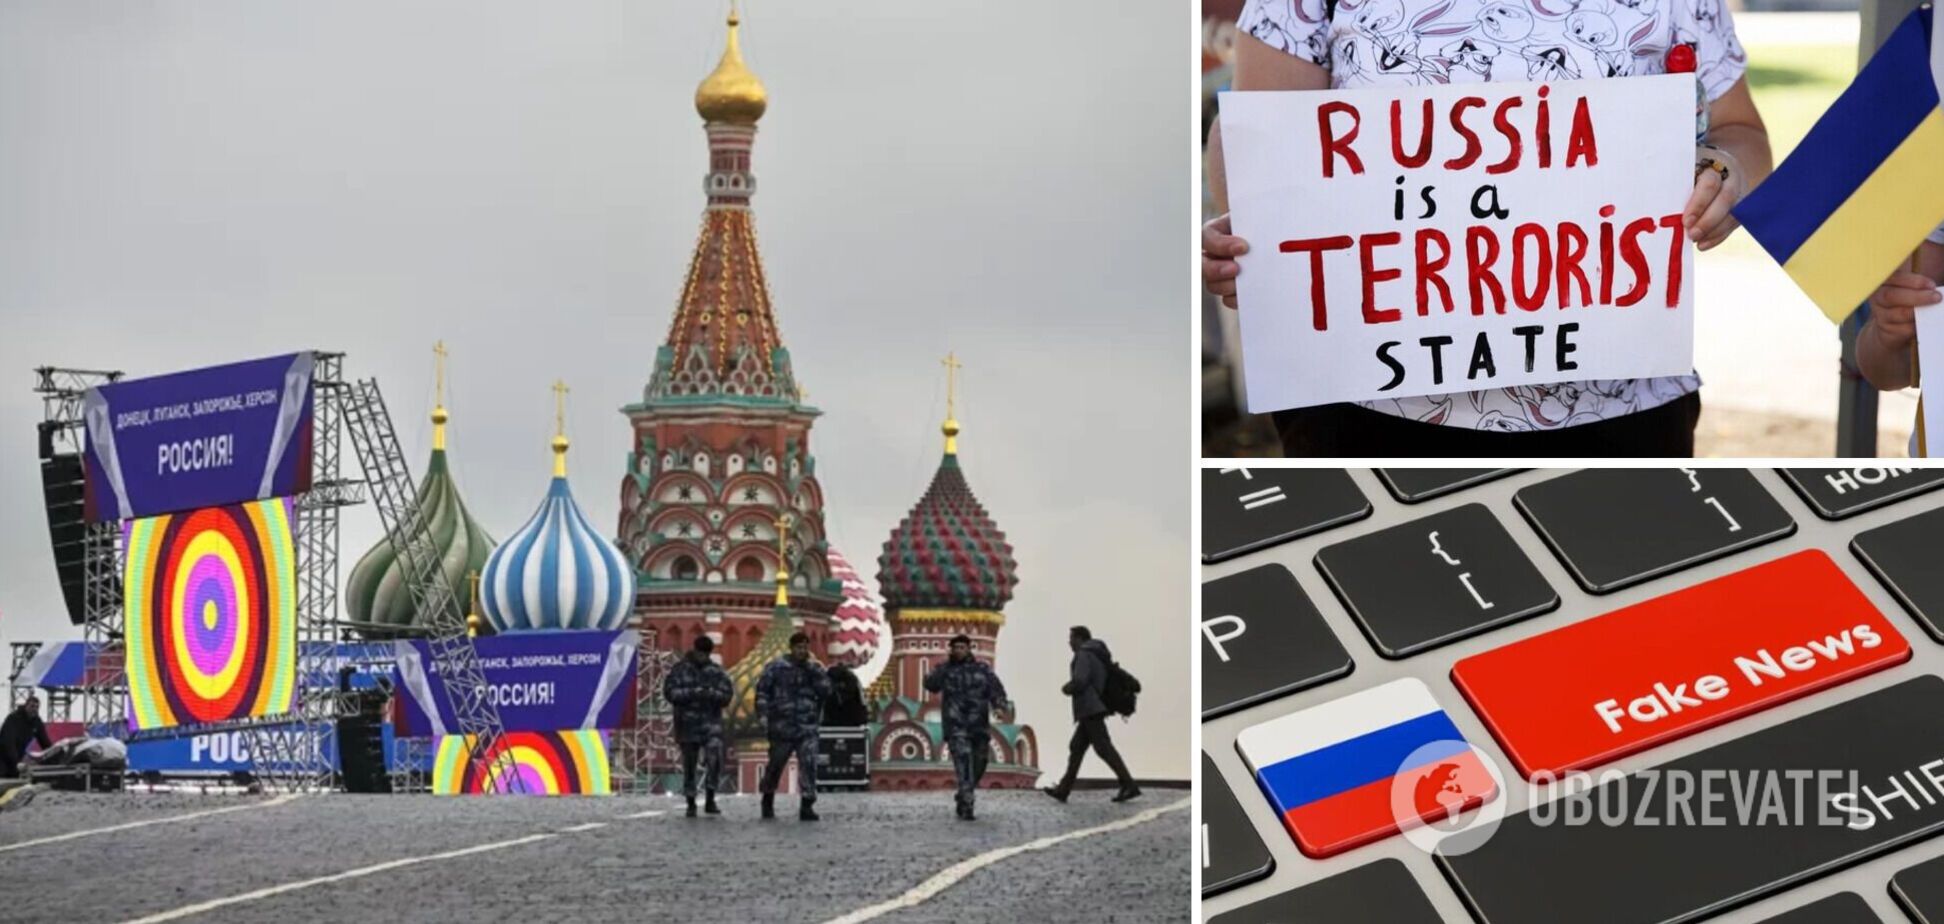 Кремль може готувати теракти 'під чужим прапором' усередині самої Росії – розвідка Польщі